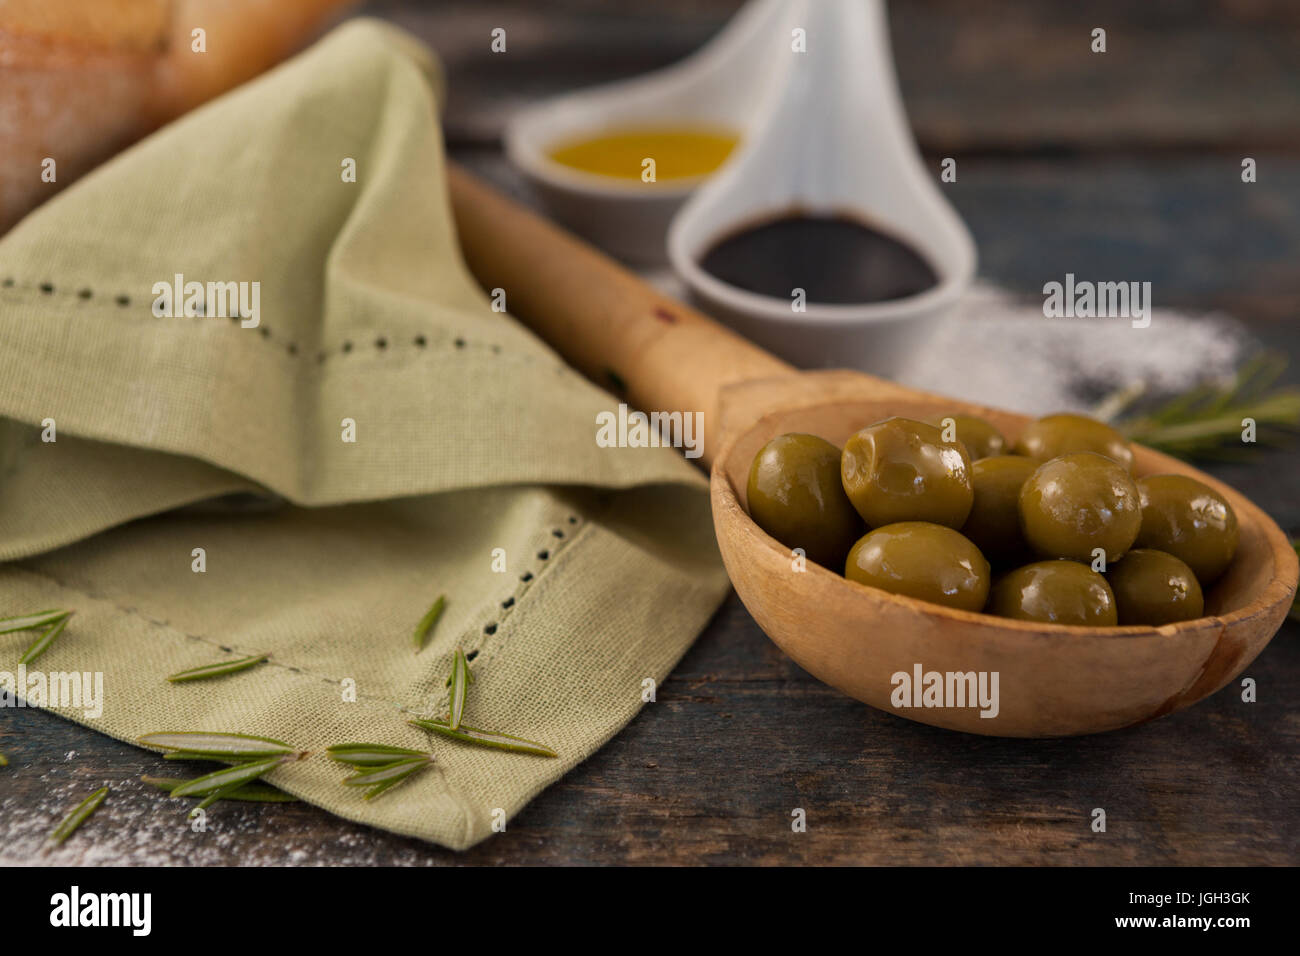 In prossimità delle olive verdi in cucchiaio con olio su tavola Foto Stock